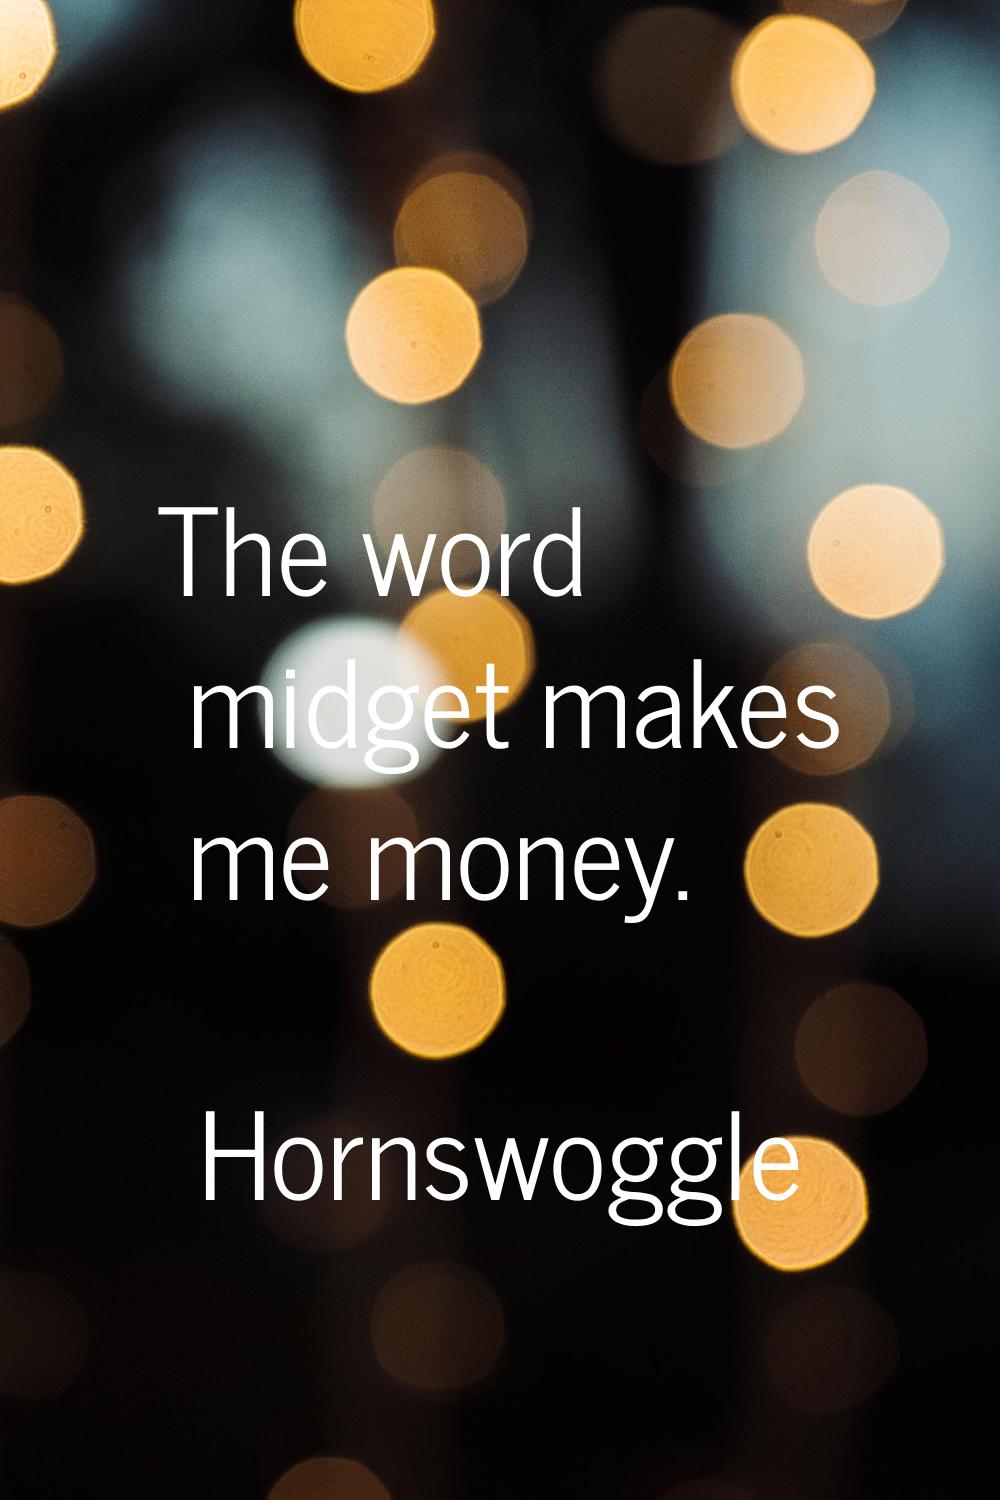 The word midget makes me money.